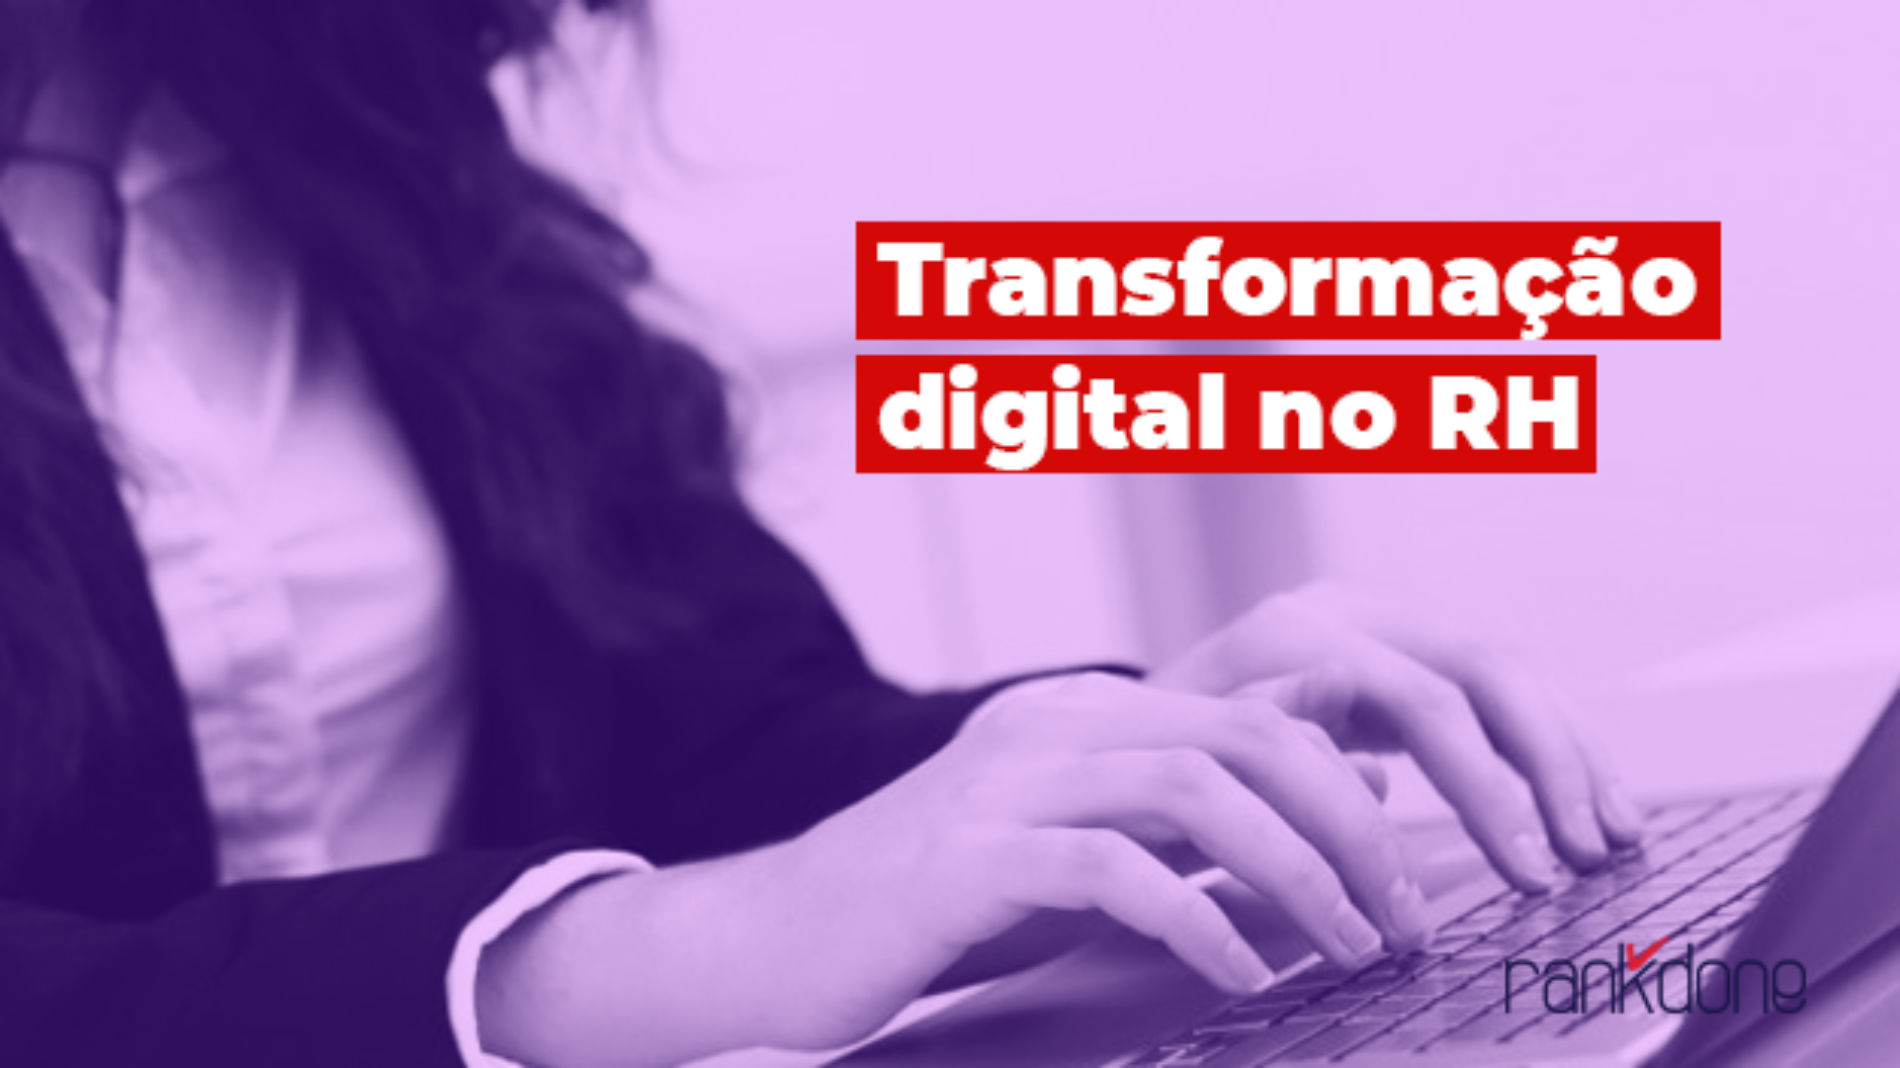 Conheça os impactos da transformação digital no RH